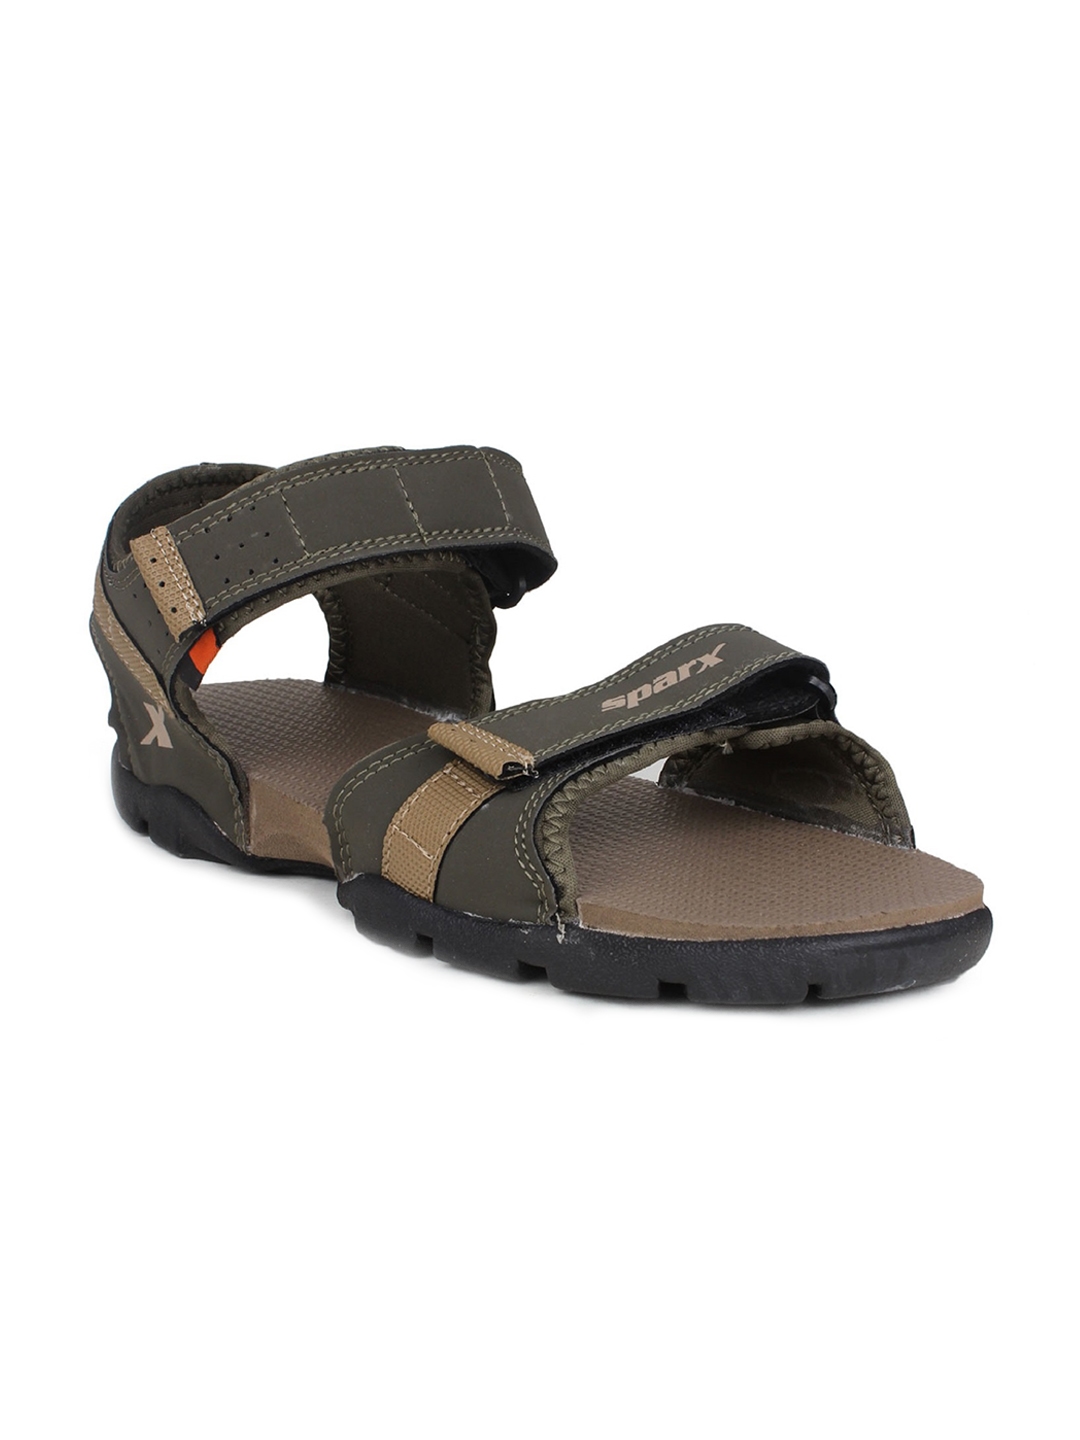 Buy Sandals for men ss-606 - Sandals Slippers for Men | Relaxo